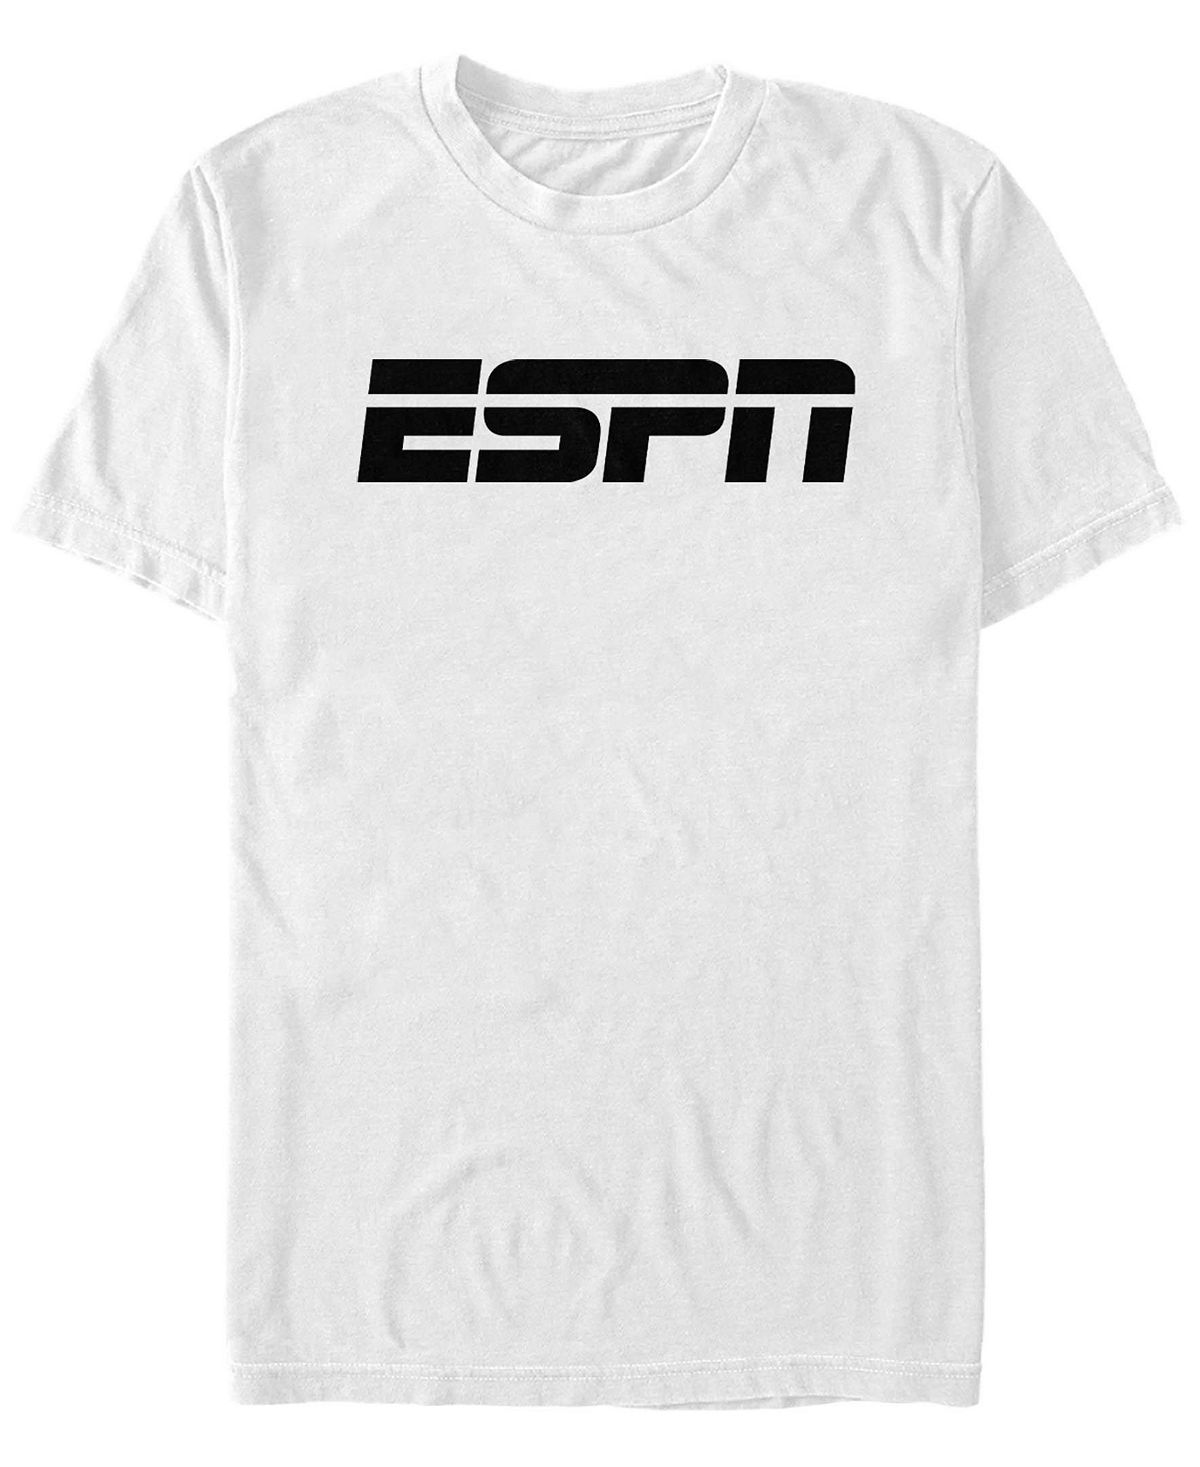 Мужская футболка с круглым вырезом и короткими рукавами с логотипом Fifth Sun, белый мужская футболка с круглым вырезом и короткими рукавами в винтажном стиле с логотипом университета монстров fifth sun белый